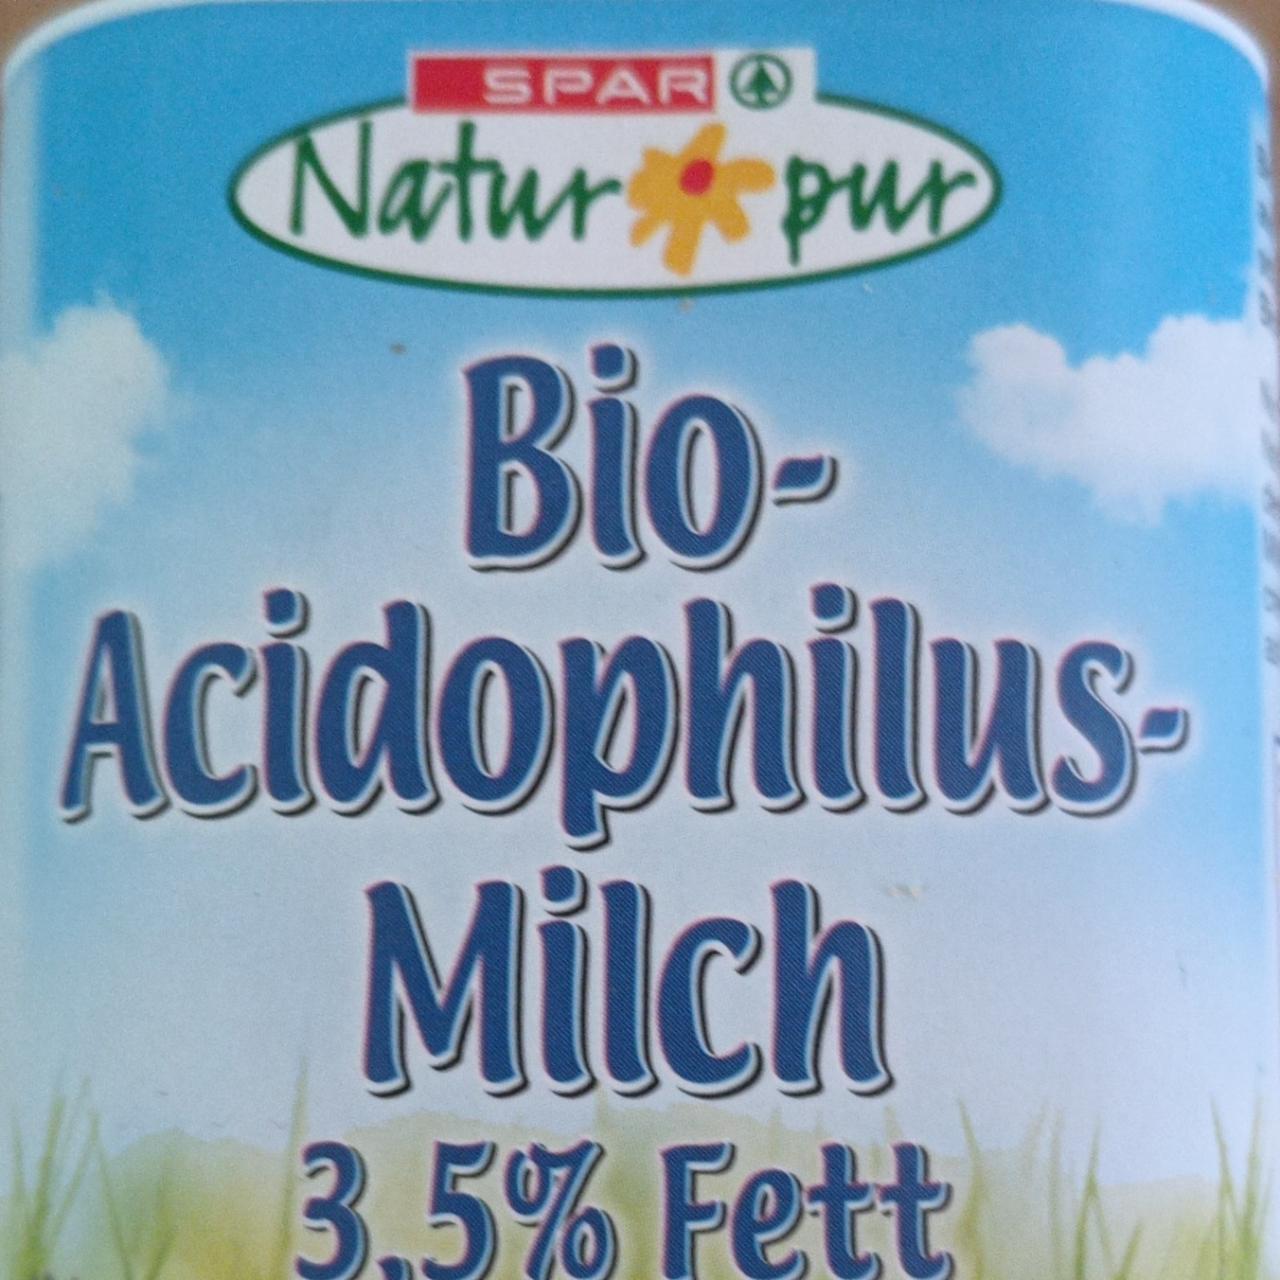 Képek - Bio acidophilus milch 3,5% Spar Natur pur